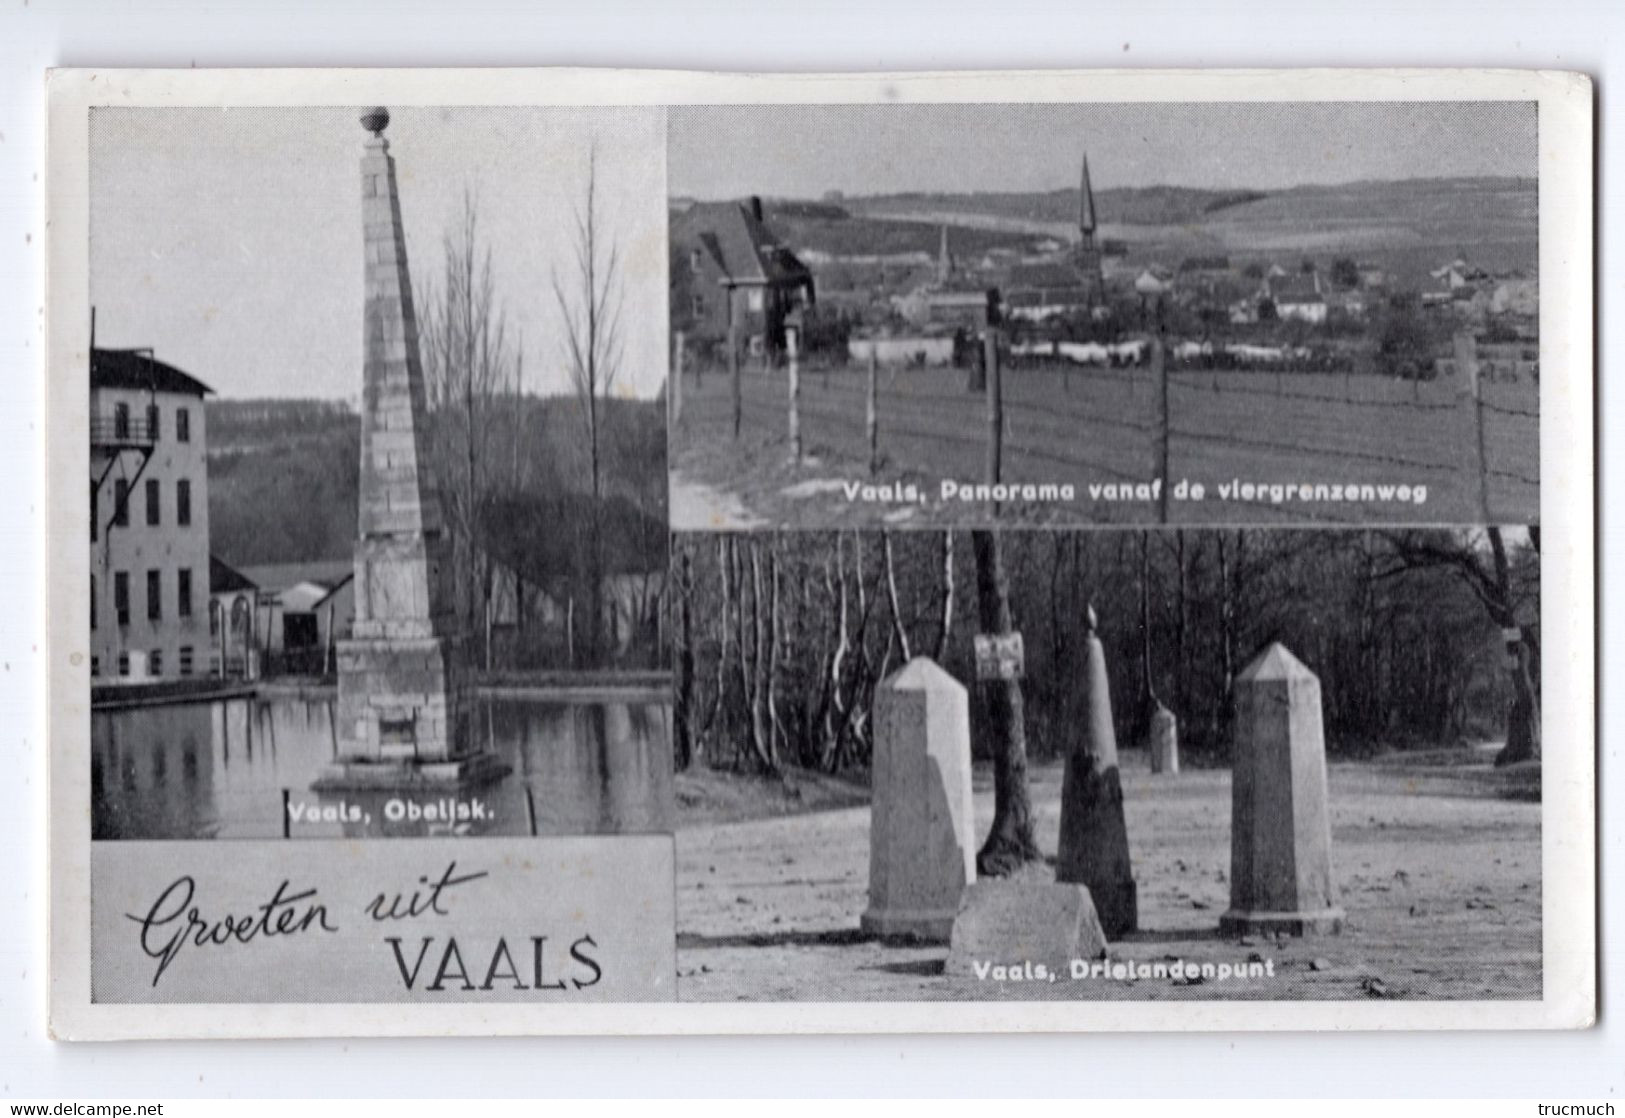 Groeten Uit VAALS - Obelisk - Panorama - Drielandenpunt - Vaals